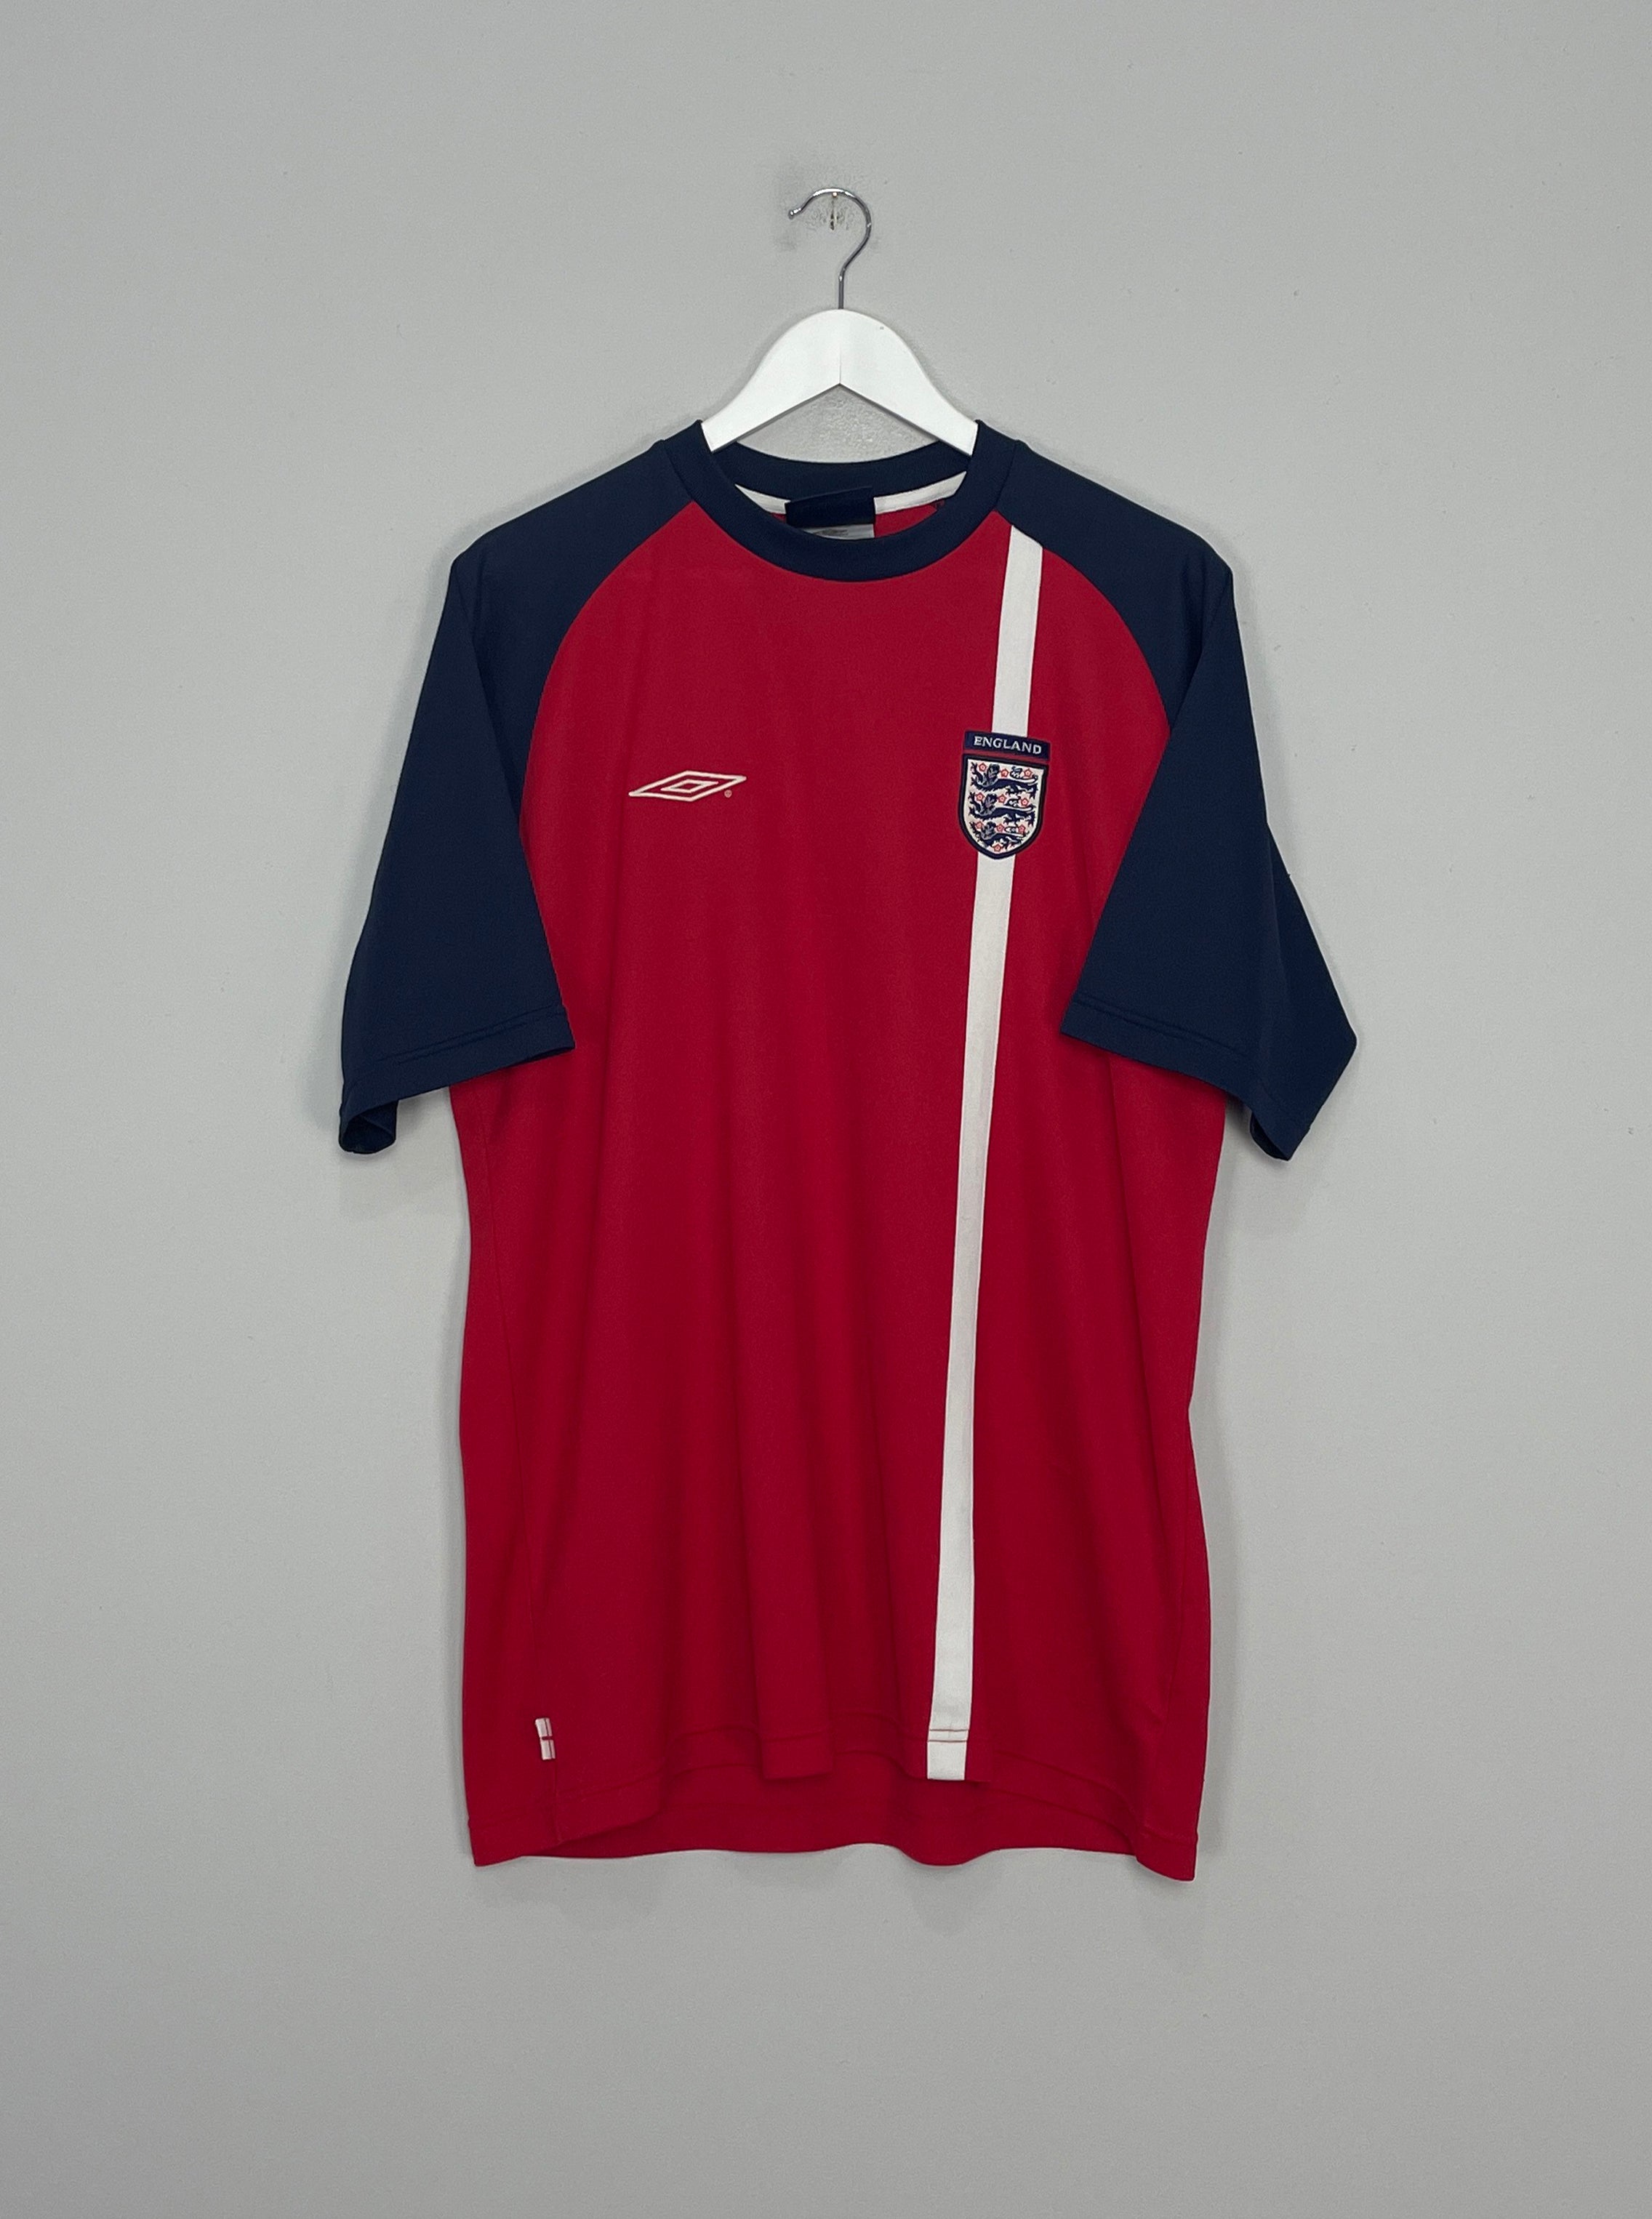 Umbro England 99/00 training kit XL